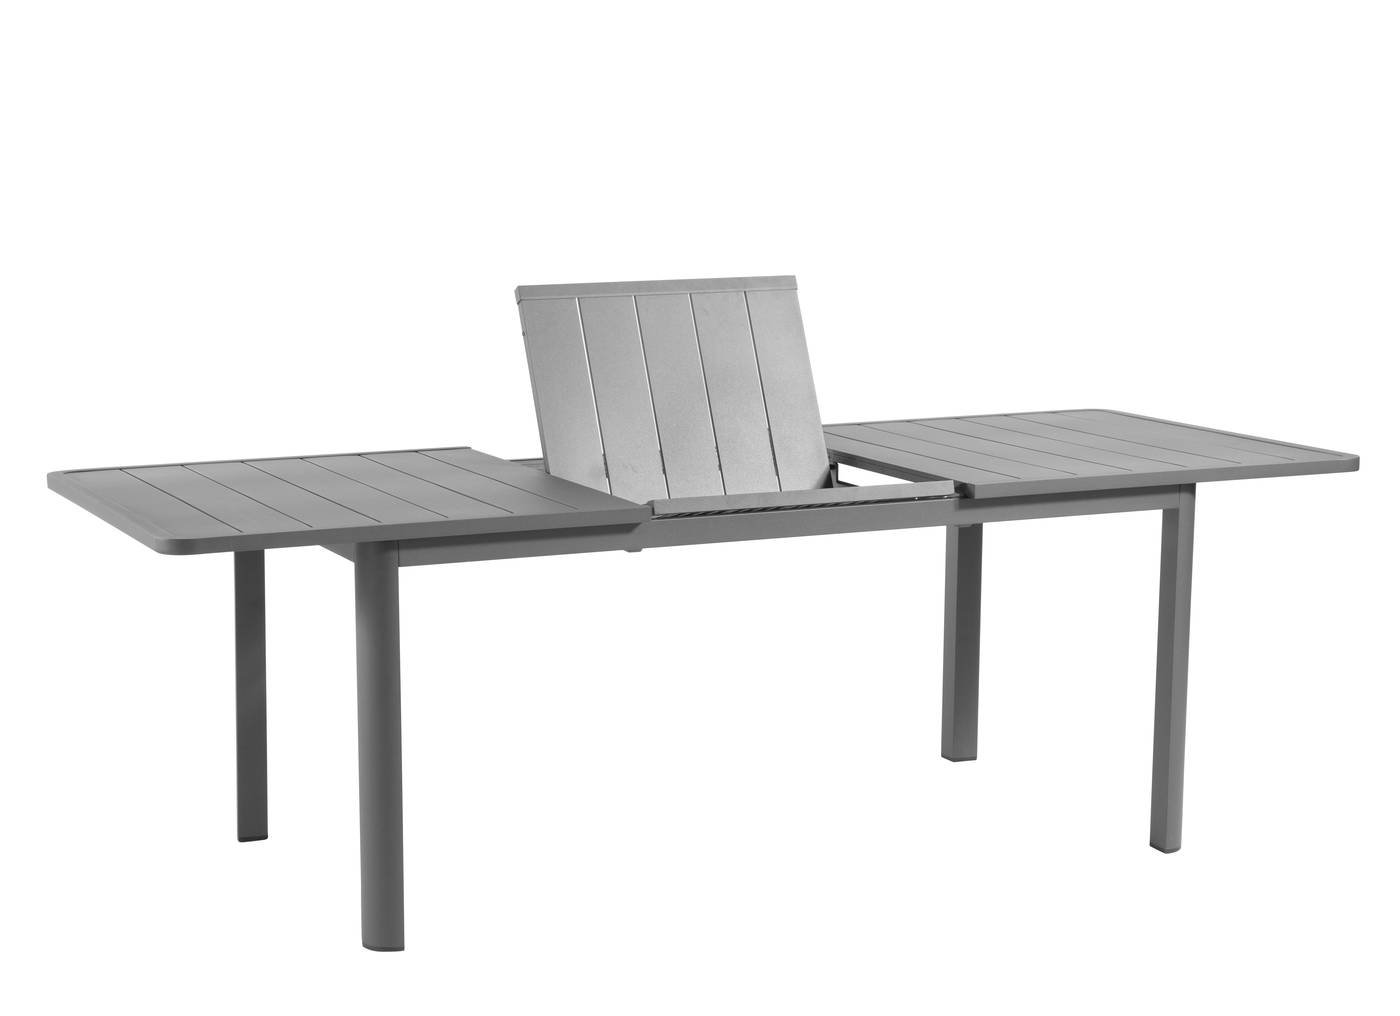 Mesa rectangular extensible 100% aluminio. Disponible en color antracita o color habana.